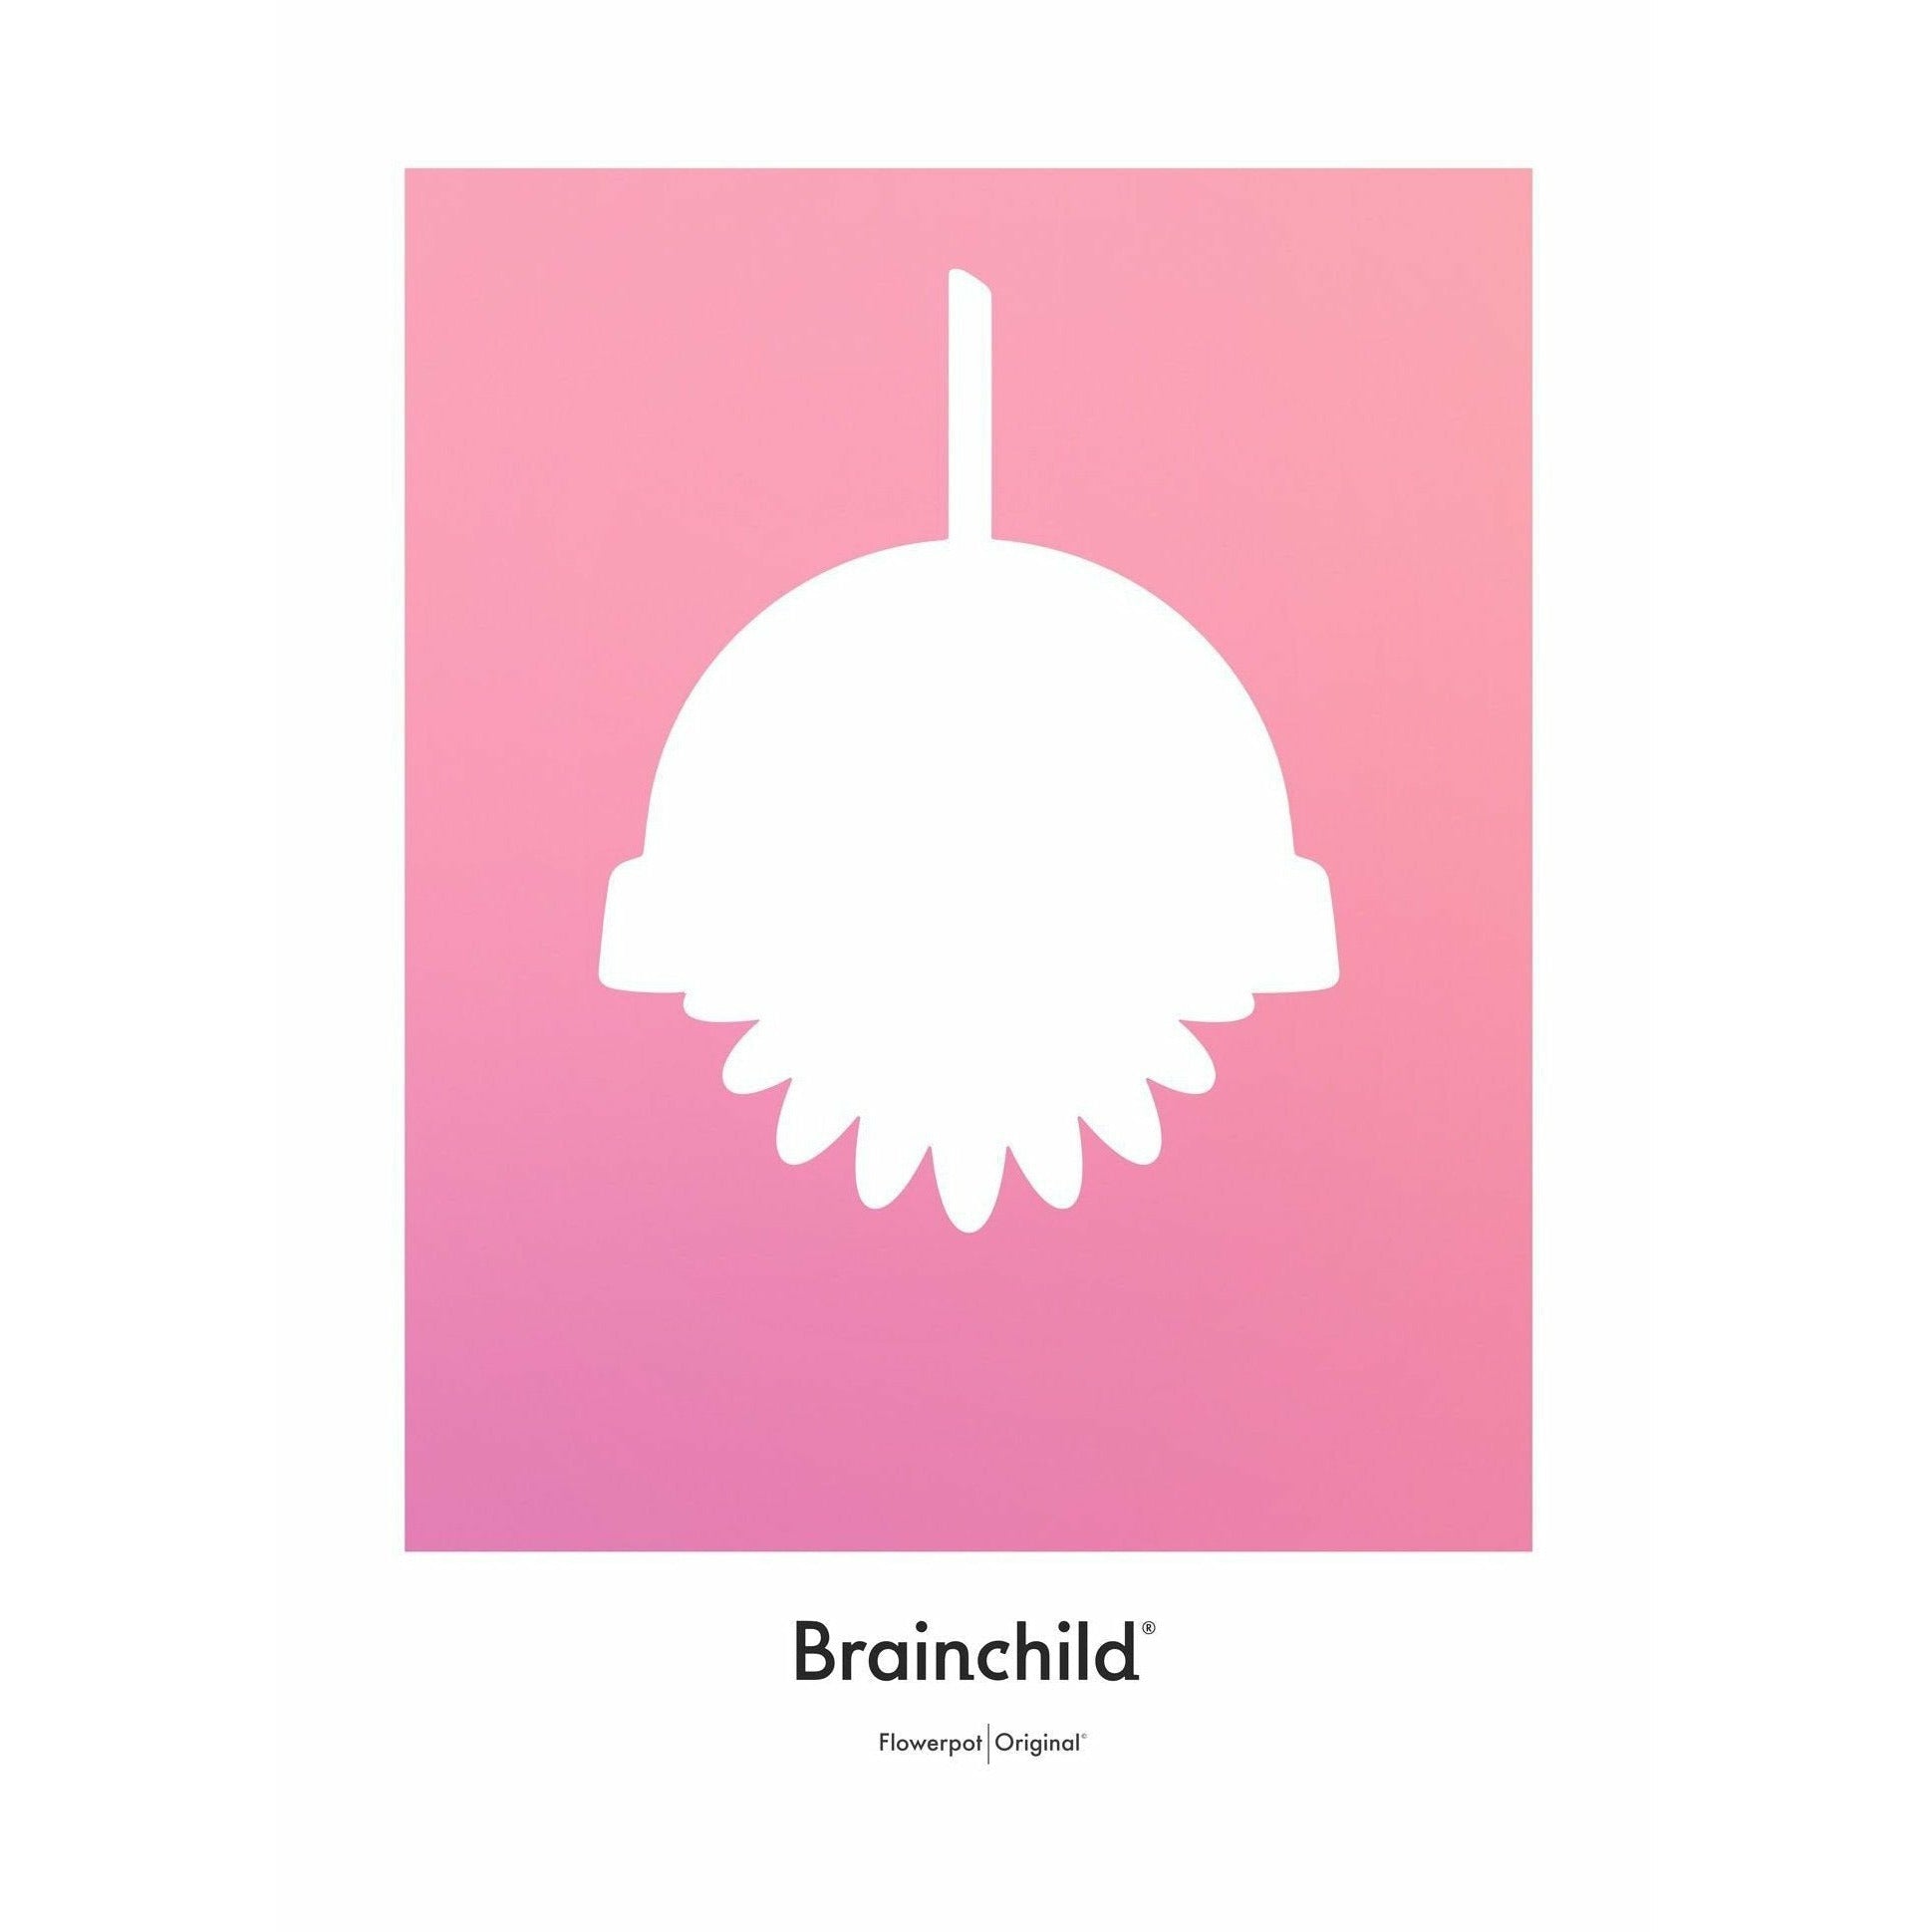 Brainchild Blumentopf Design Icon Poster ohne Rahmen A5, rosa